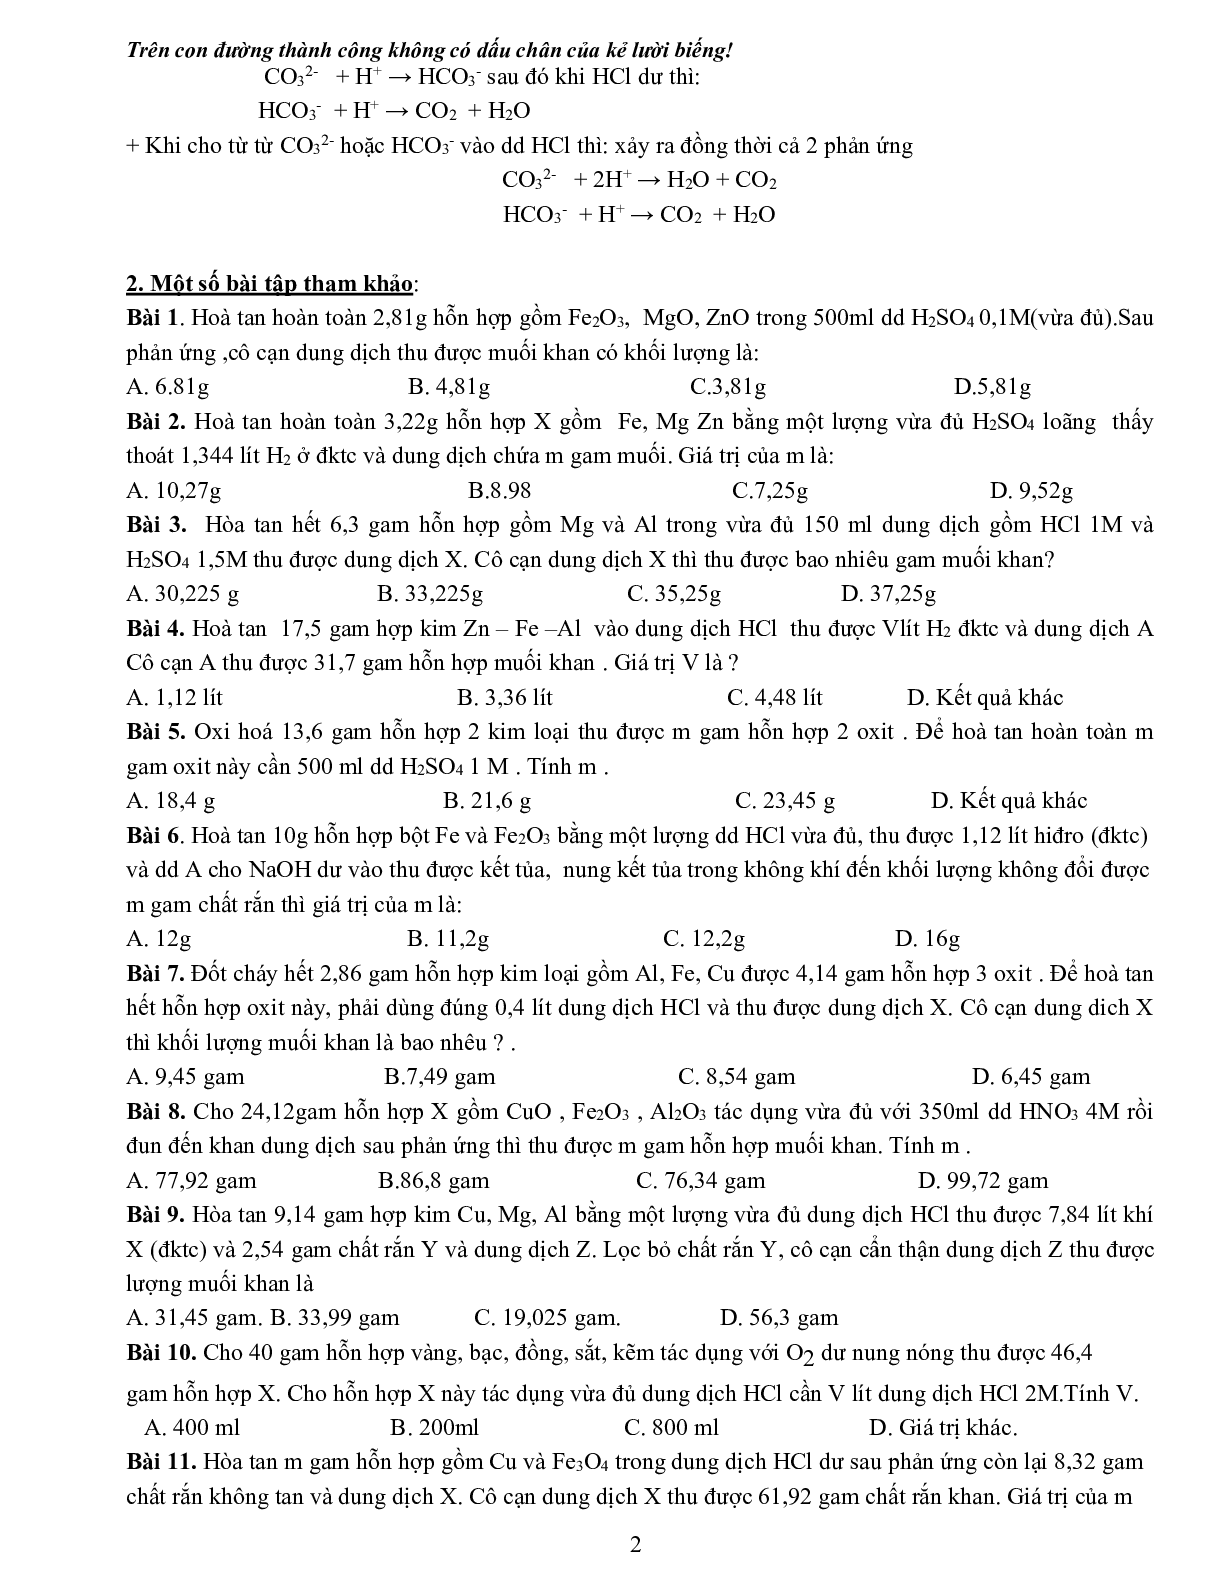 Tuyển tập phân loại 09 dạng bài tập Hóa học hay gặp nhất trong kỳ thi THPT Quốc gia (trang 2)